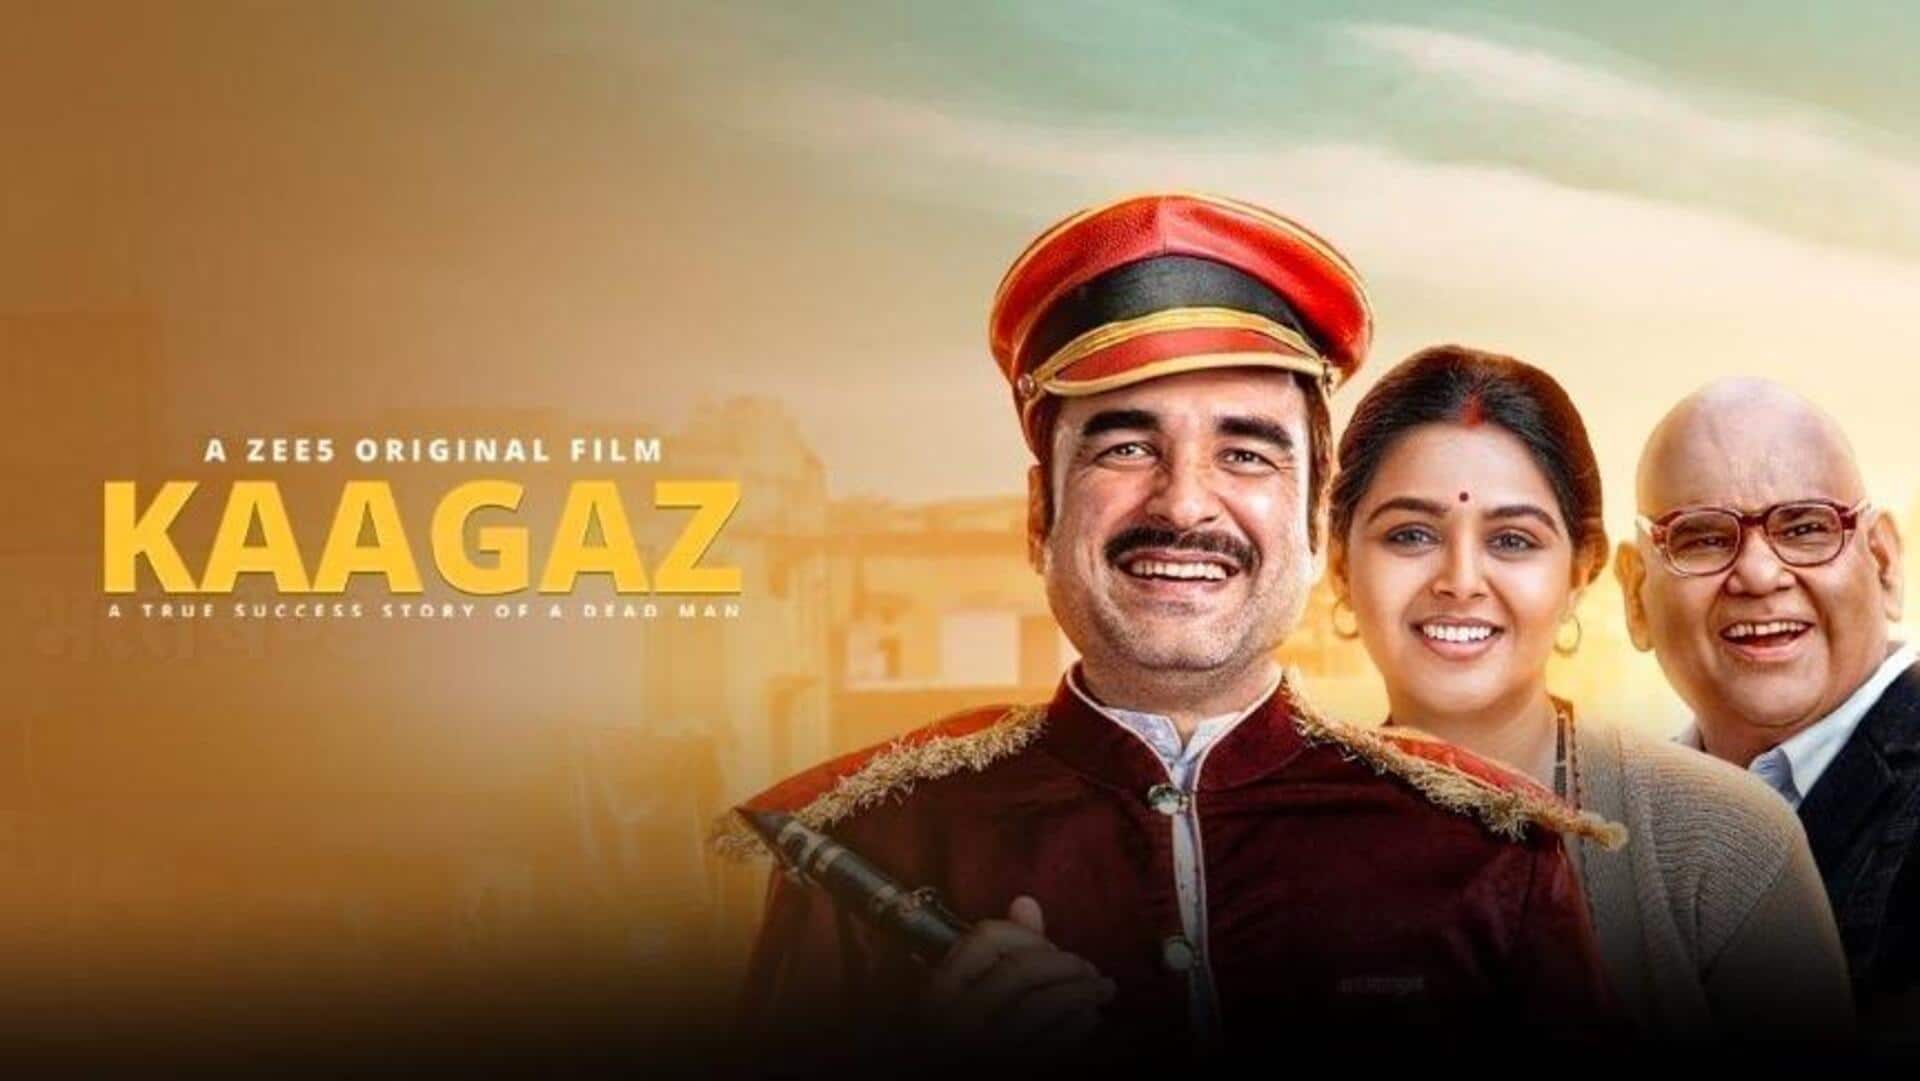 सतीश कौशिक की आखिरी फिल्म 'कागज 2' पर काम चालू, निर्माता रतन जैन ने की पुष्टि 